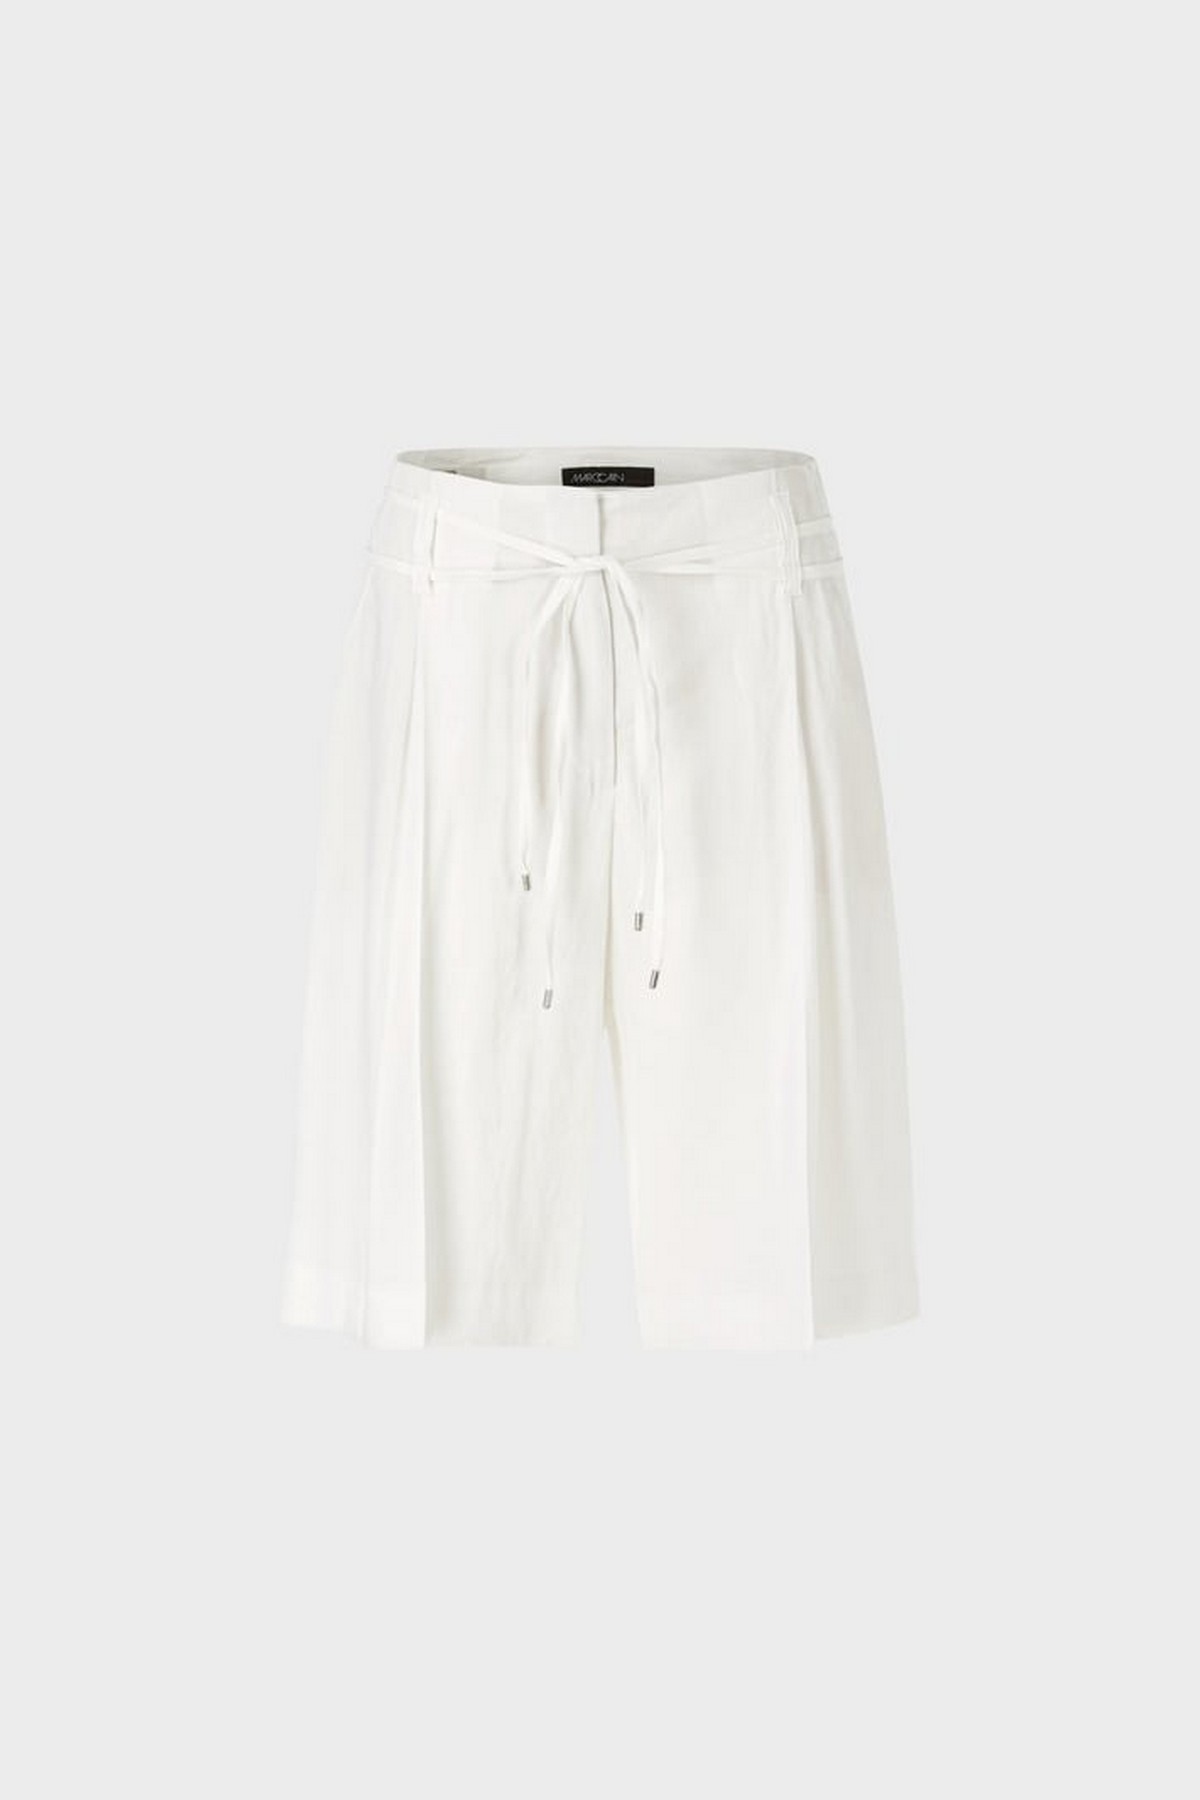 Short linnen viscose in de kleur off white van het merk Marc Cain Collections